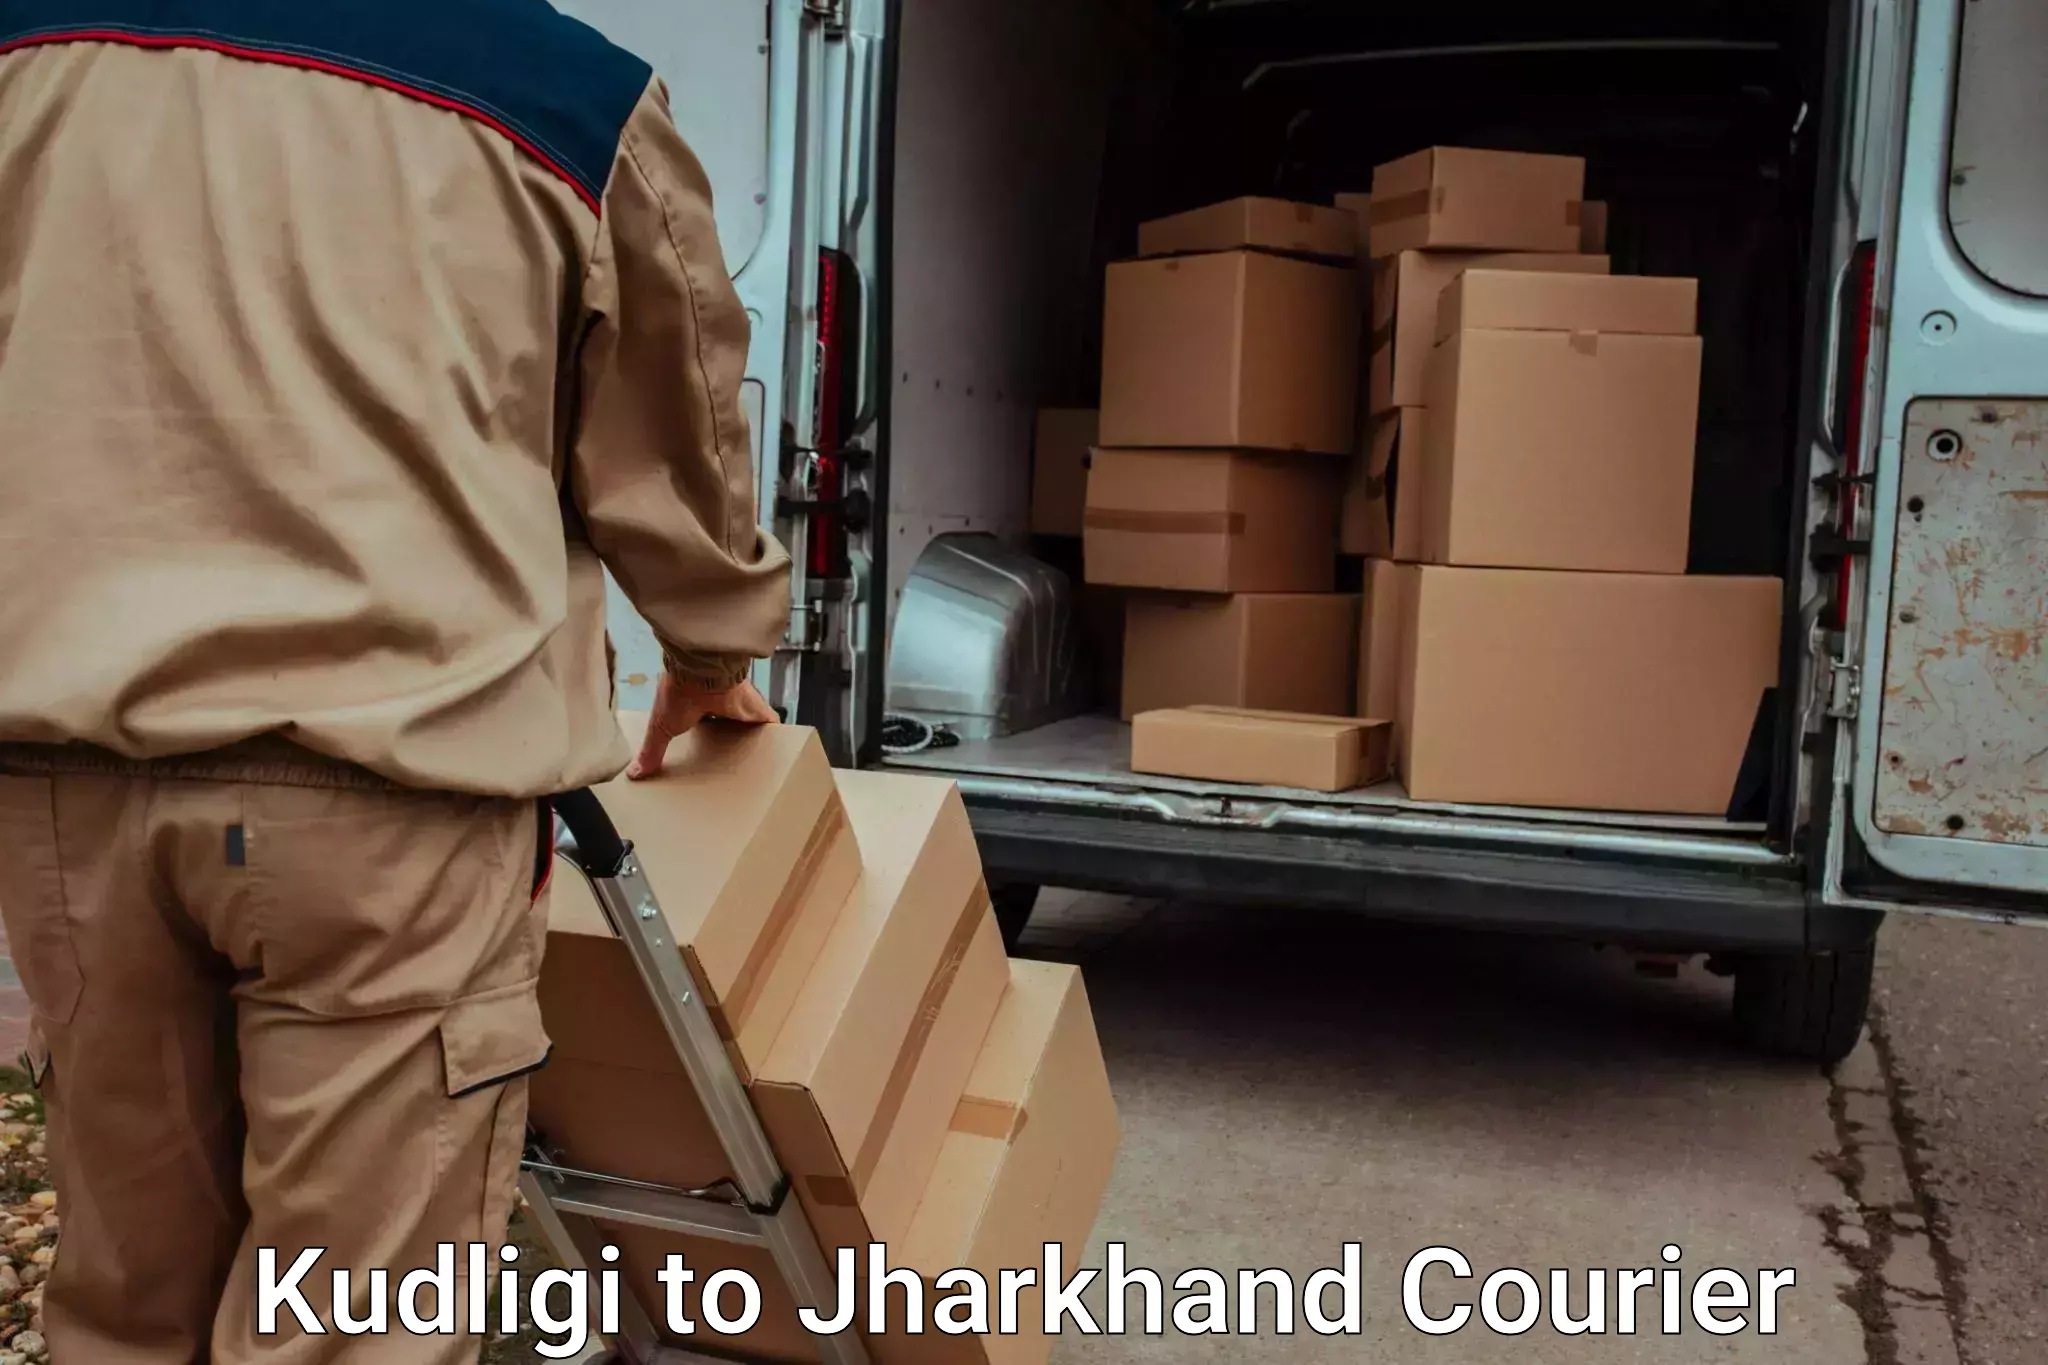 Furniture transport service Kudligi to Jamshedpur